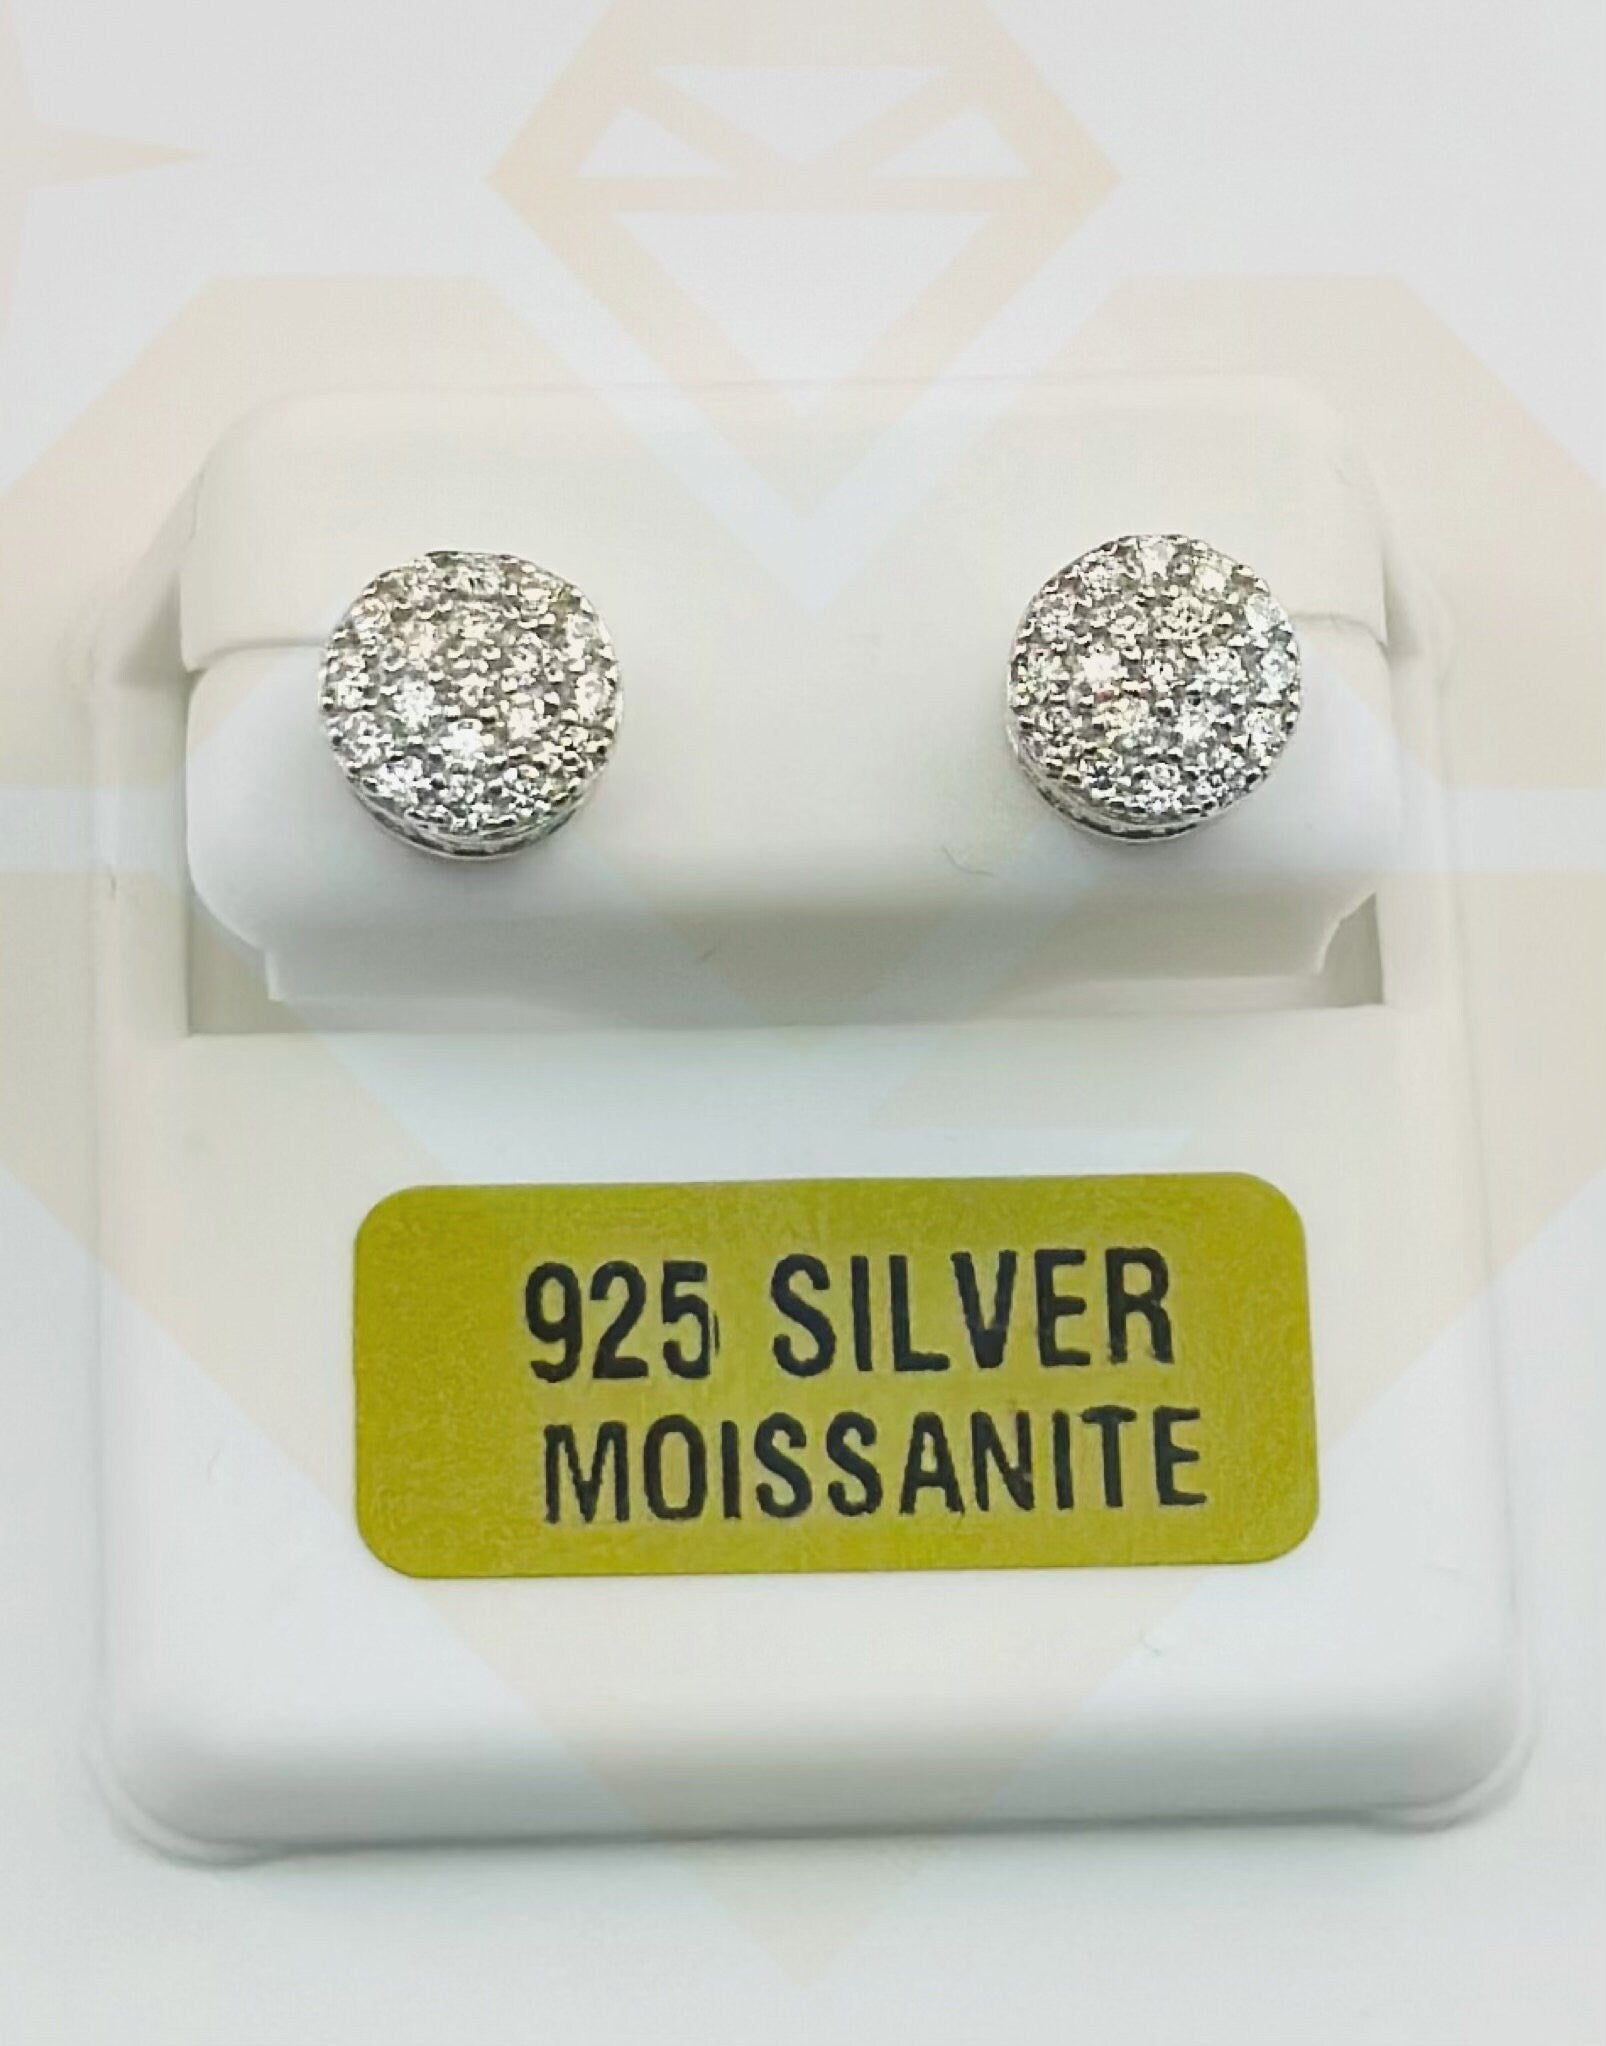 14k Gold Vermeil Diamond Earrings |VVS Studs | VVS Gra Certified | Unisex | Christmas Gift | 100% passes Diamond Testers Best gift for Him